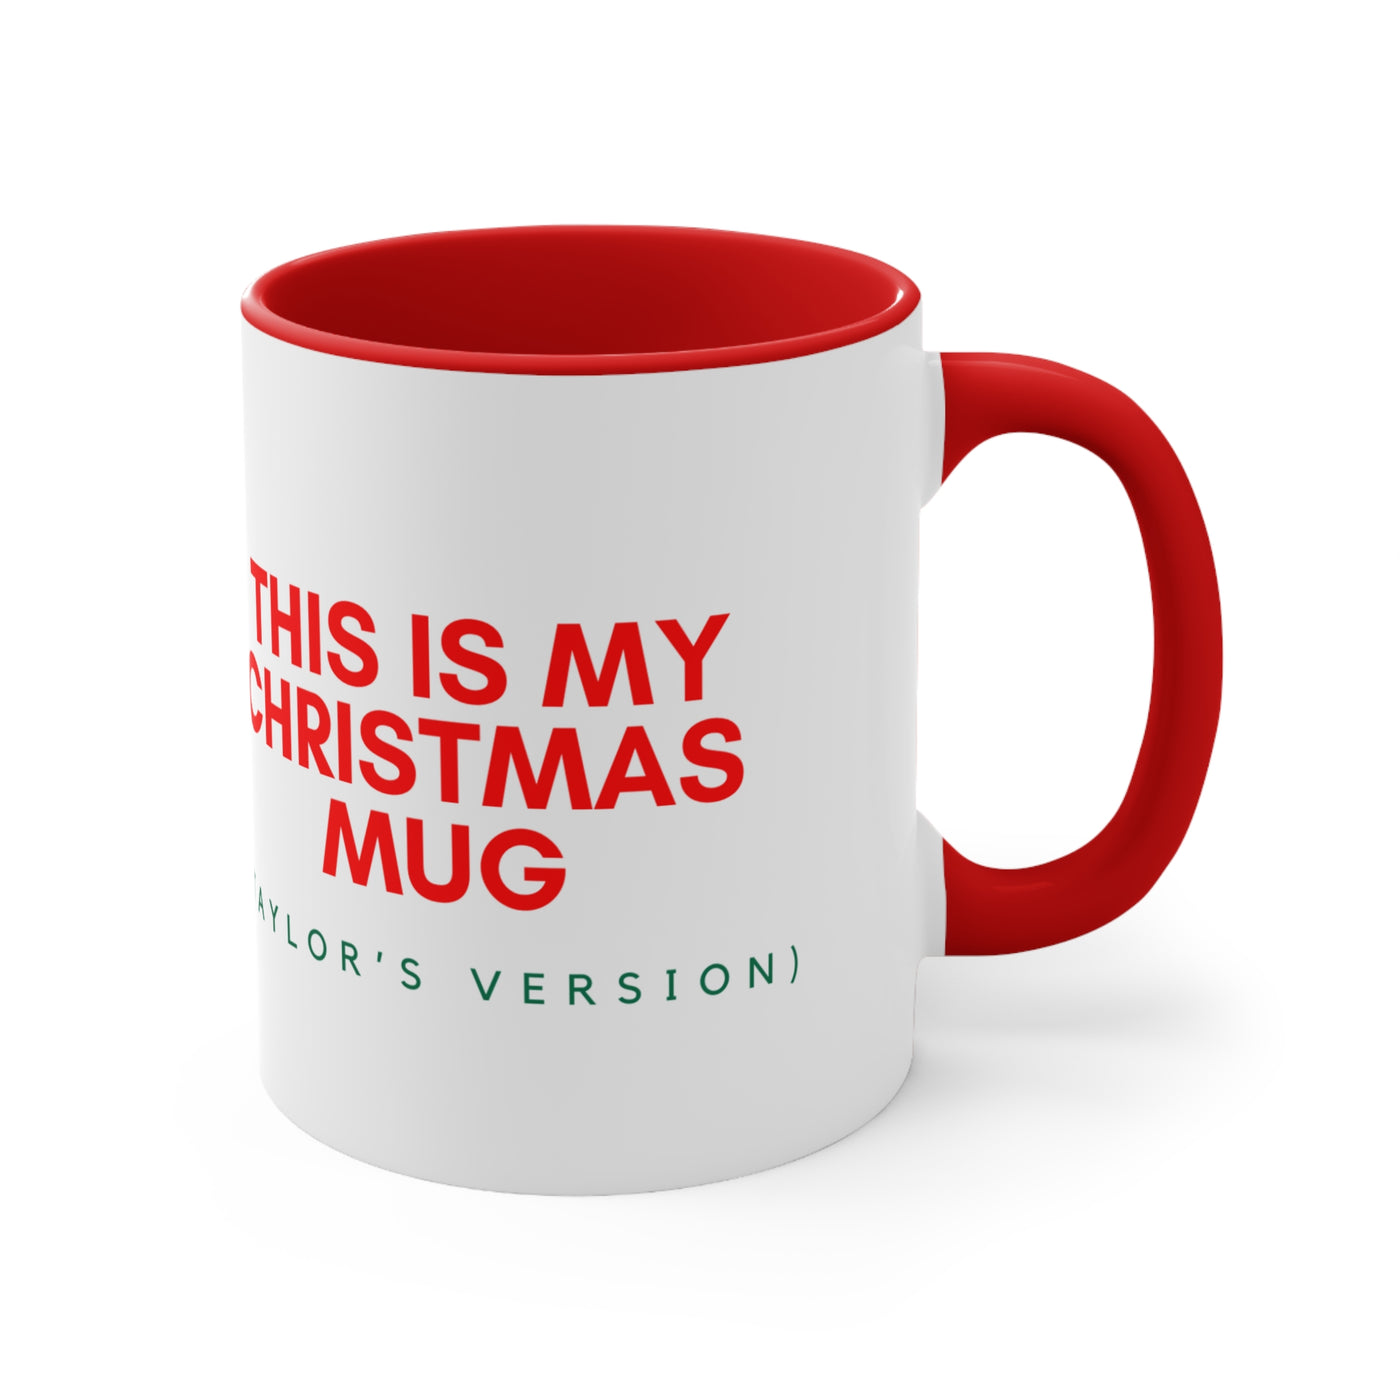 The Taylor - Christmas Mug (Taylor's Version)